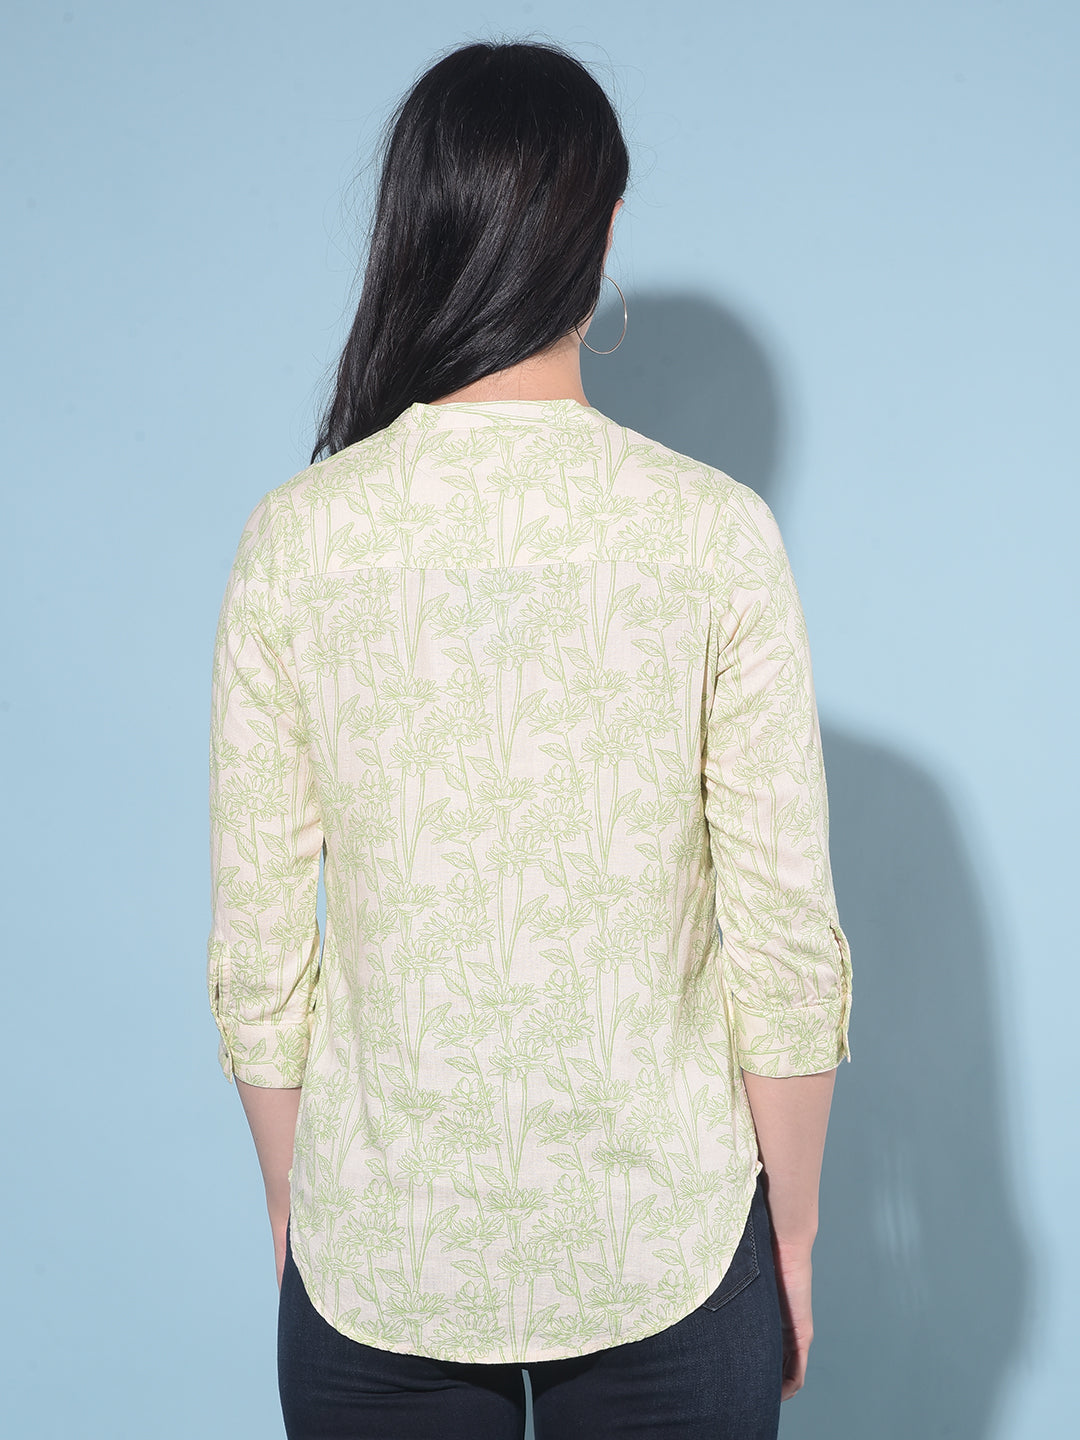 Green Floral Print Linen Top-Women Tops-Crimsoune Club